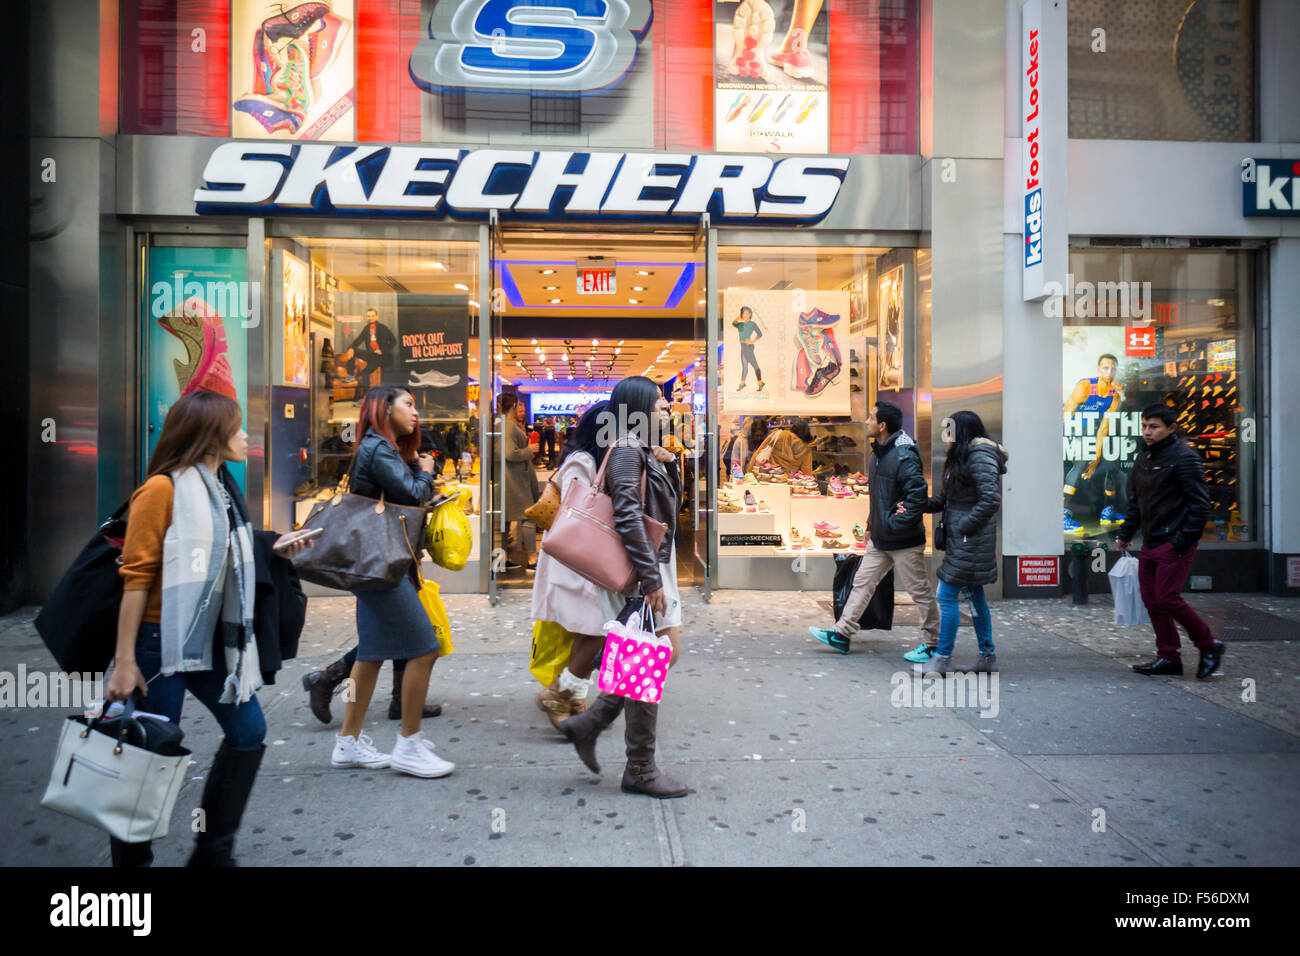 skechers retail new york